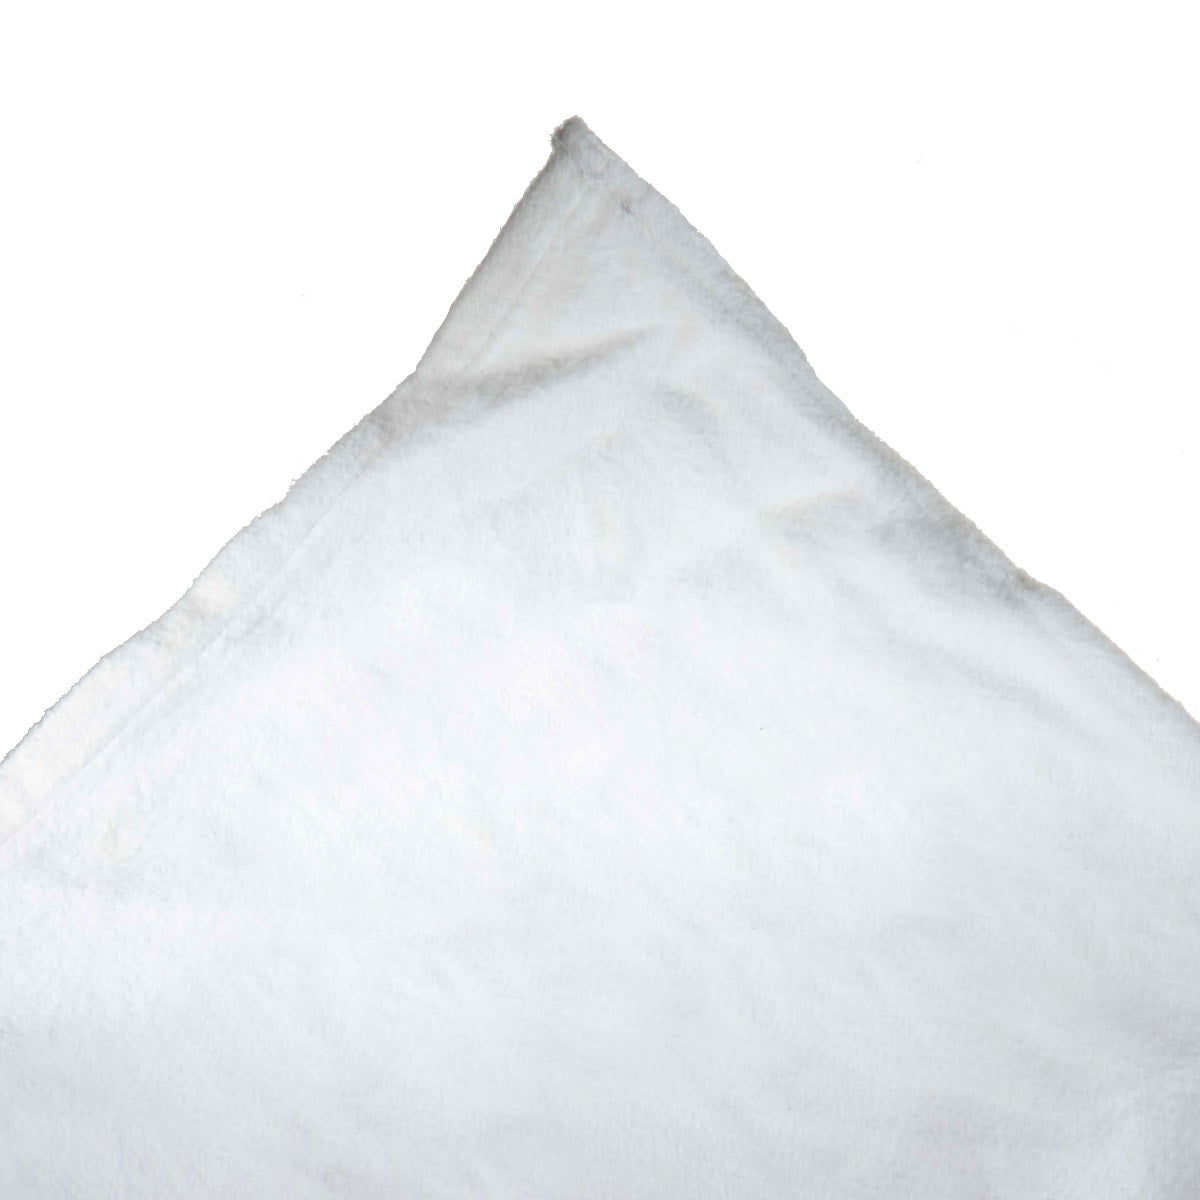  White Material/Molton 300 x 300 cm / 10 x 10'